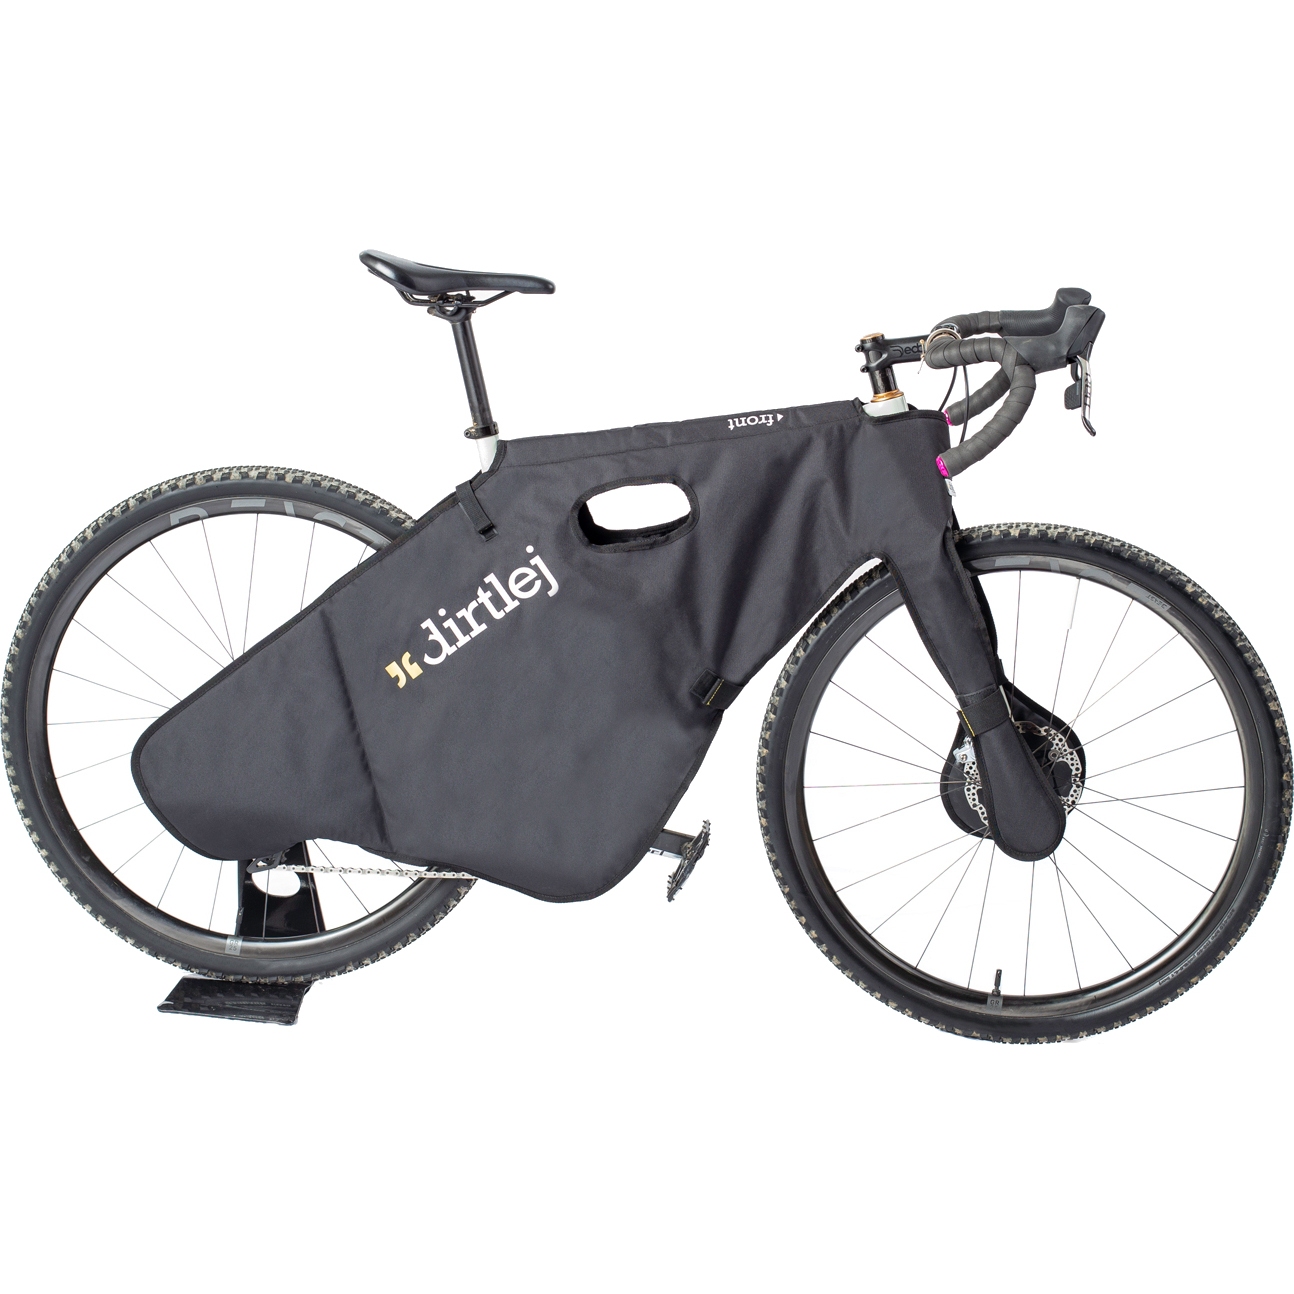 Productfoto van Dirtlej Bikeprotection Bike Wrap Gravel/Road Bike - Beschermtas voor Transport - zwart